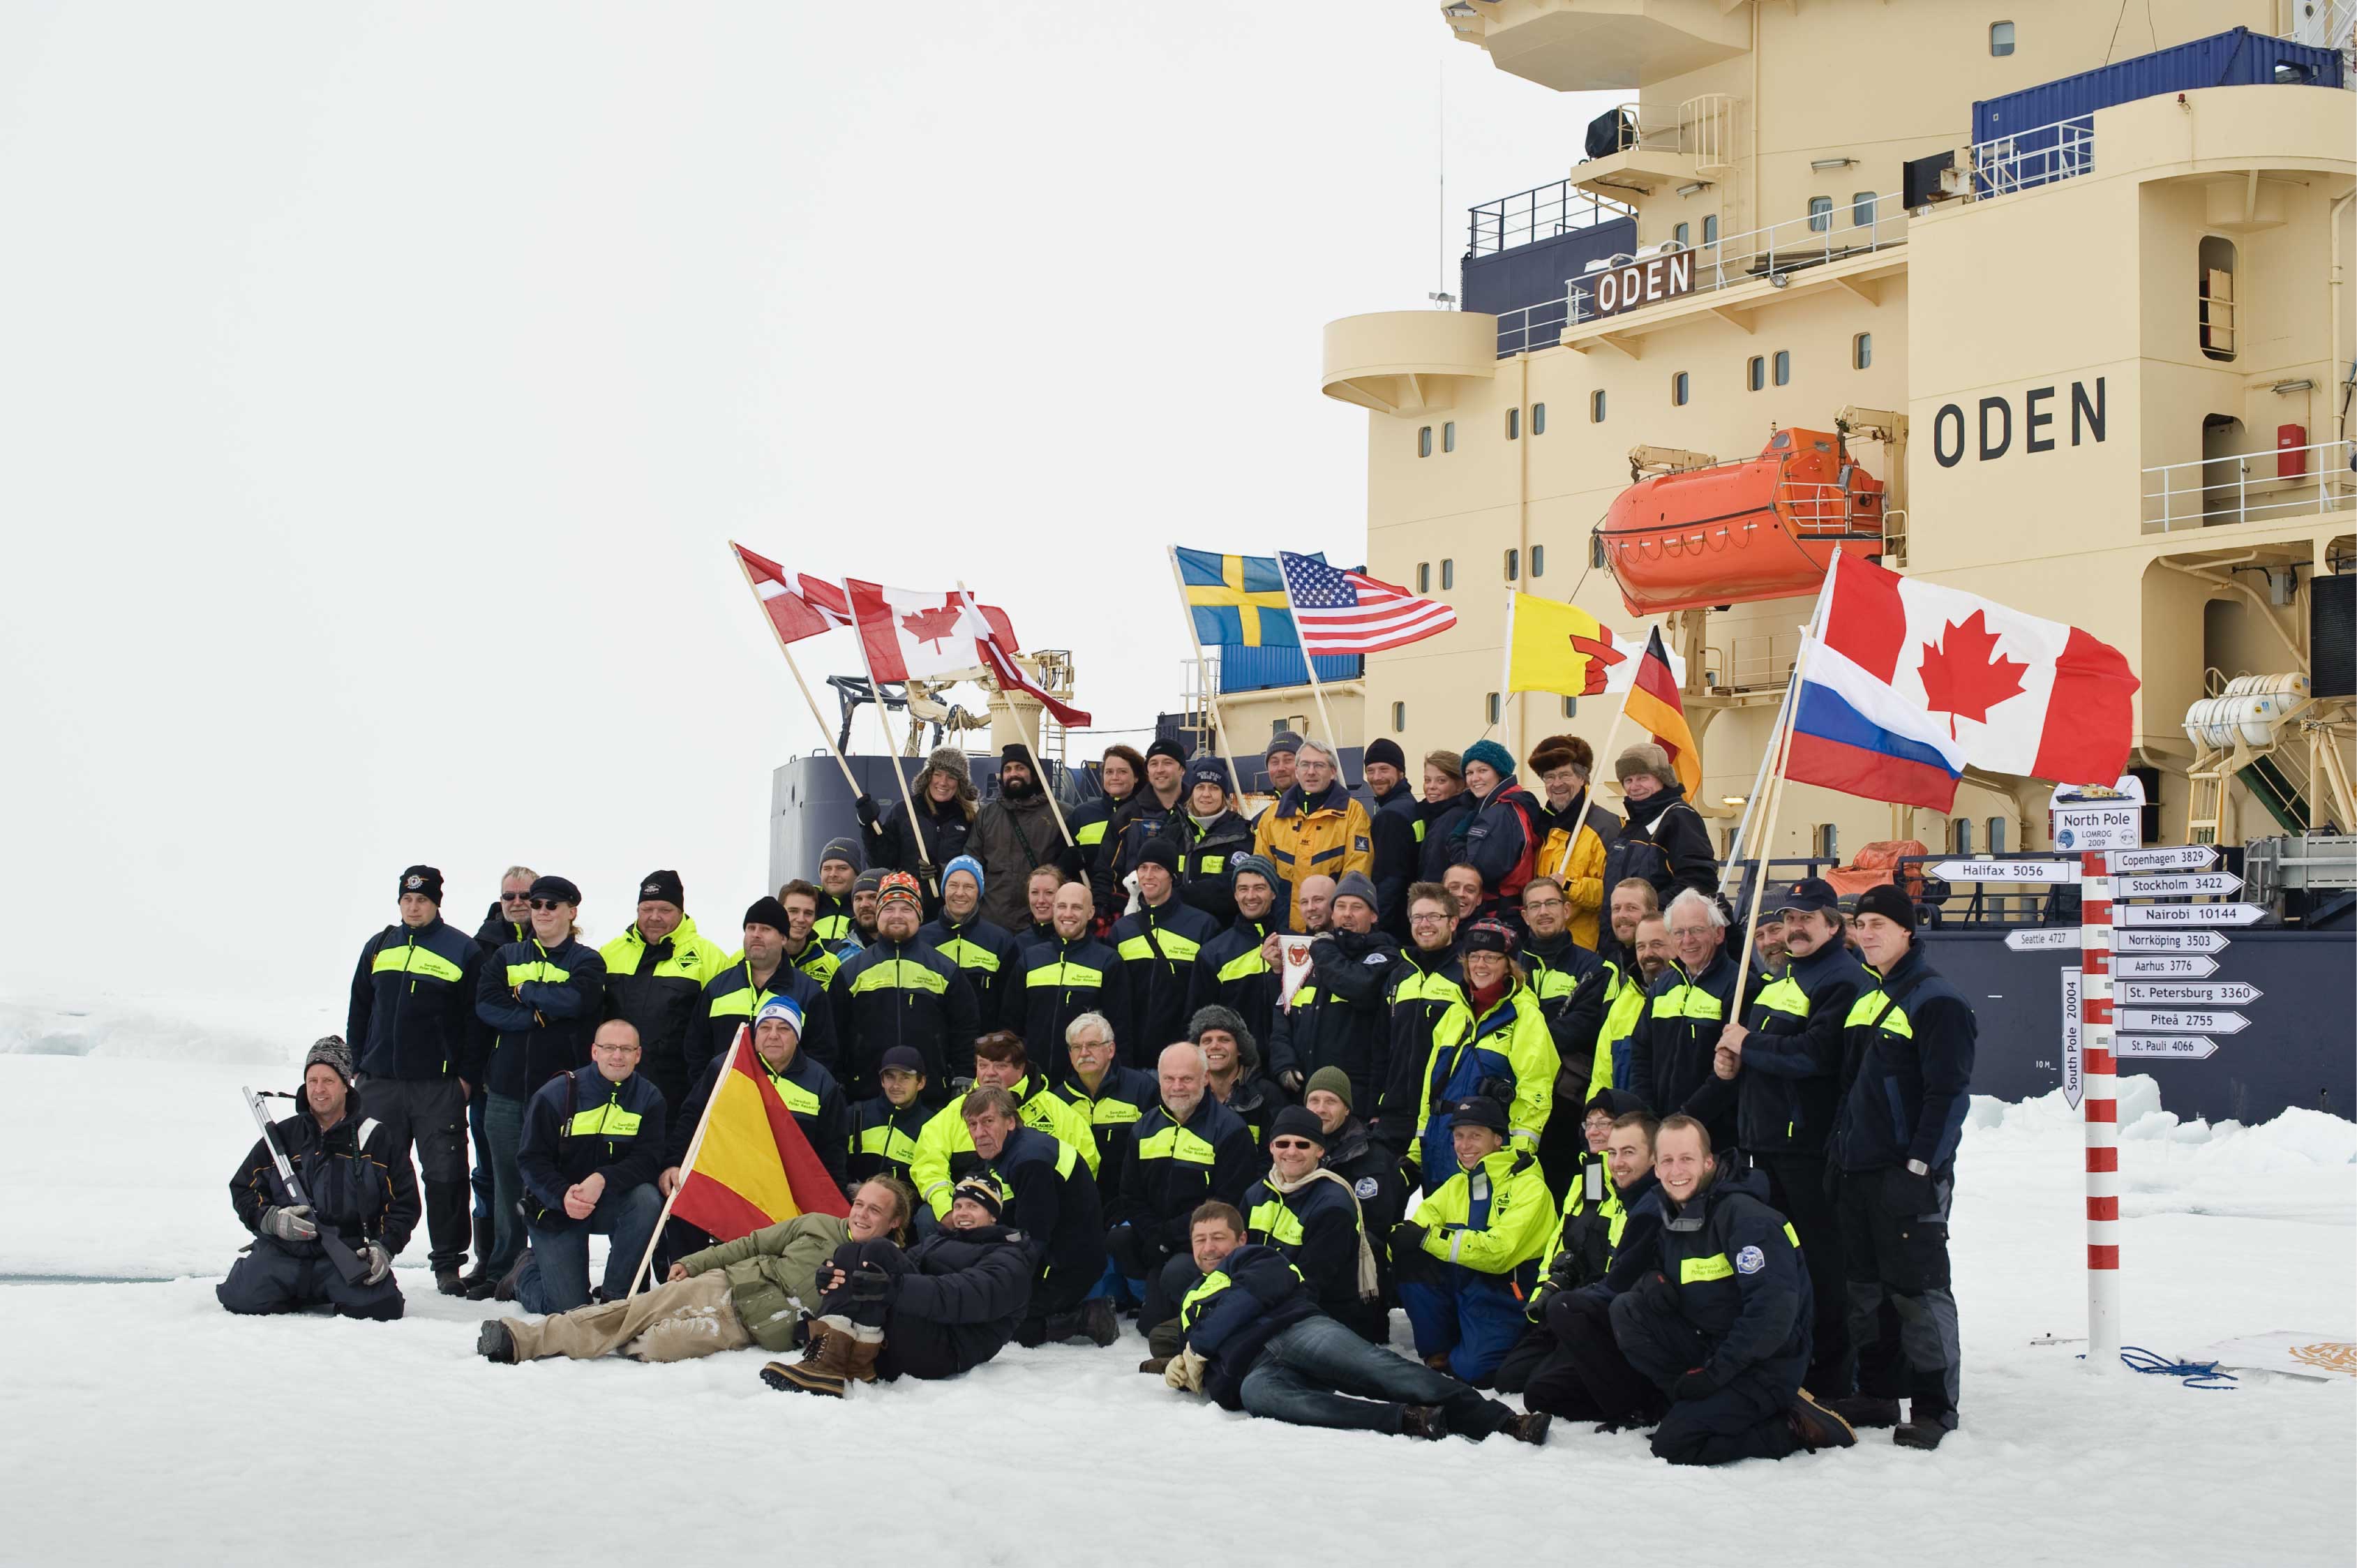 Ankomsten til Nordpolen blev markeret på traditionel vis ved at hejse et flag for hvert af de lande, der er repræsenteret ombord på Oden